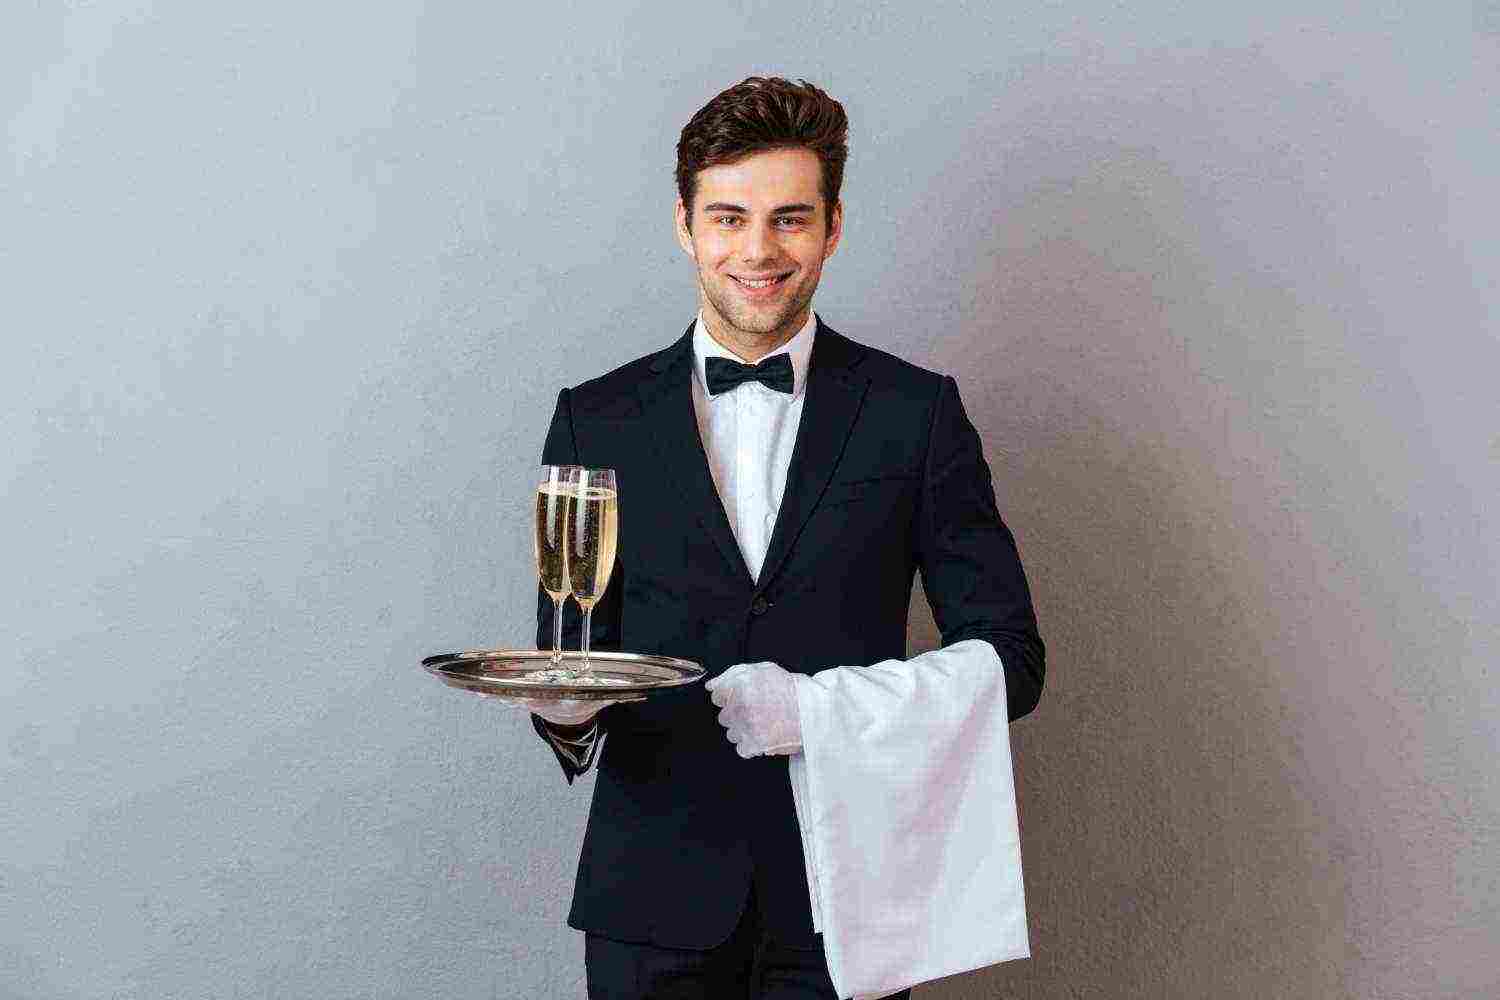 Waiter likes you